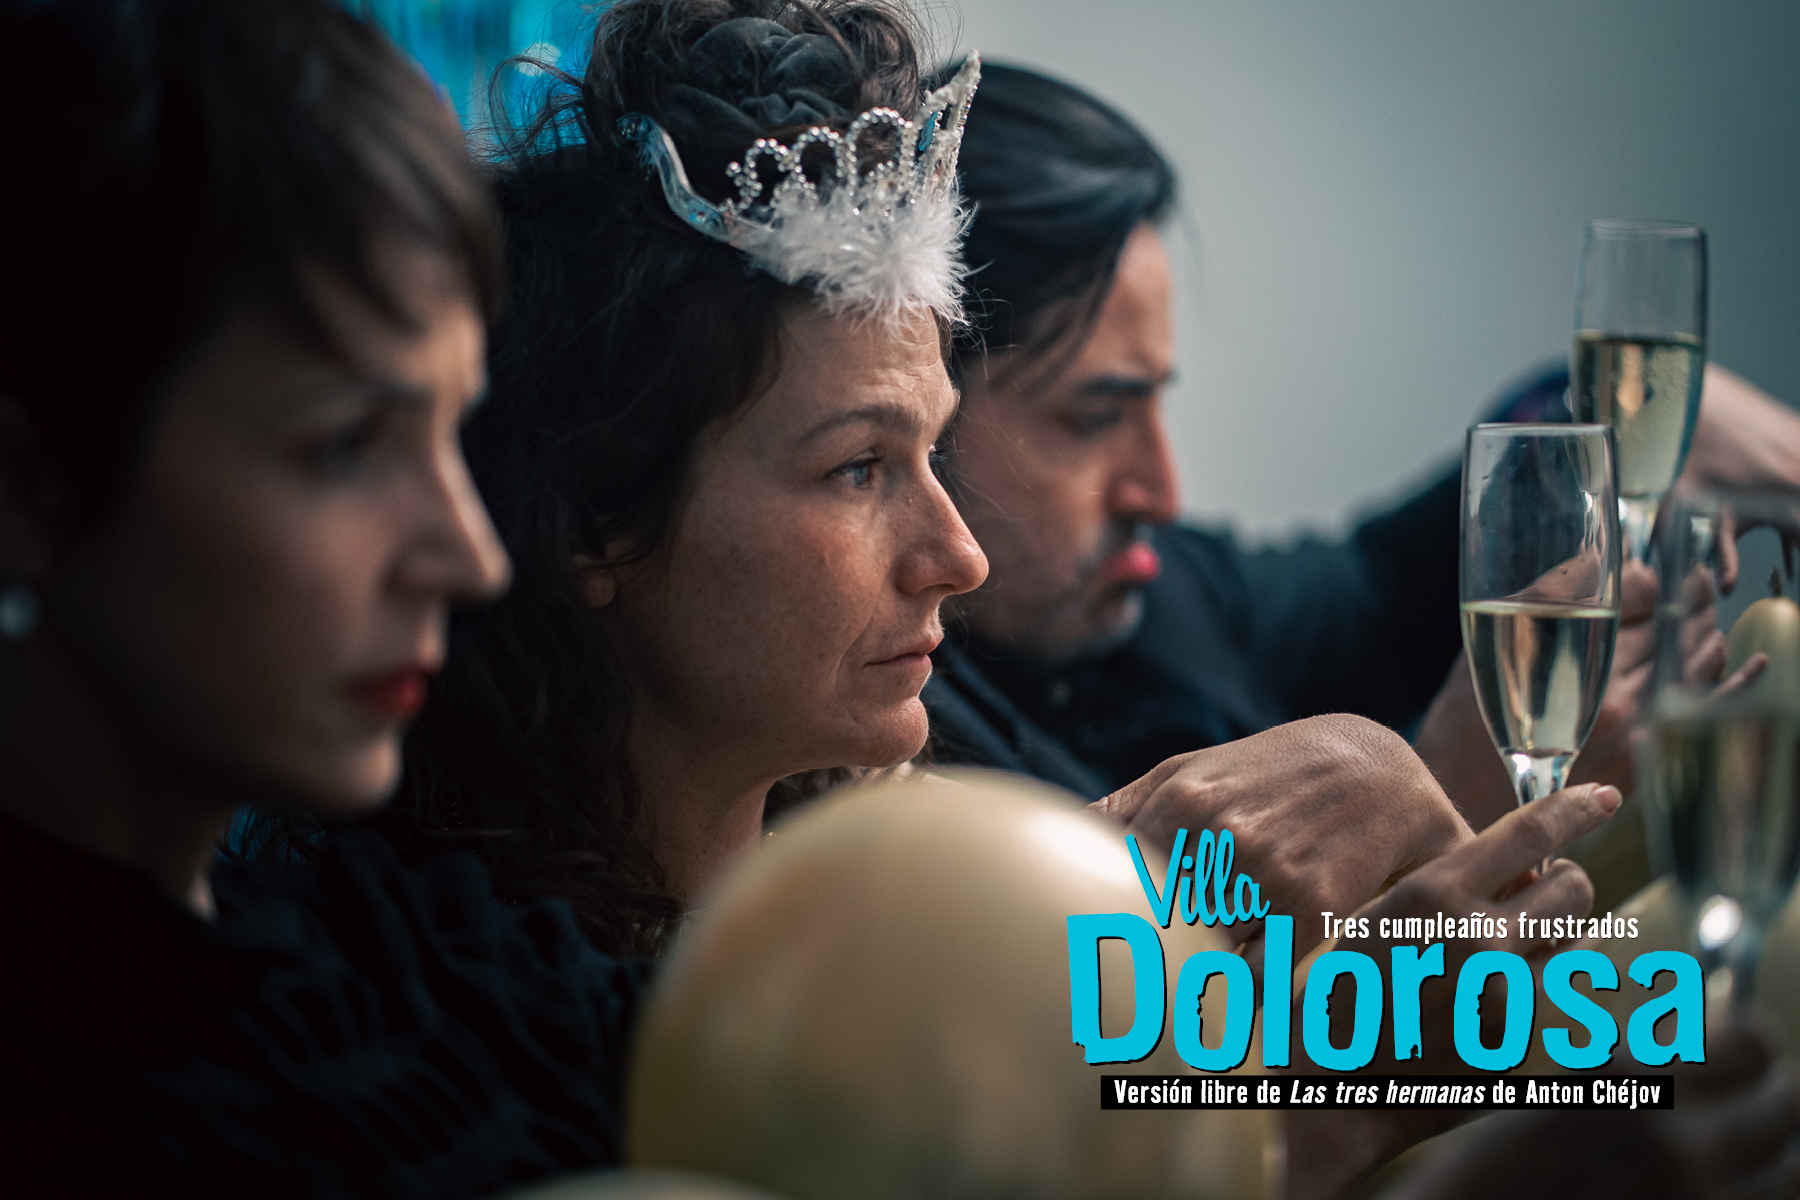 Teatro Varsovia recibirá a “Villa Dolorosa. Tres cumpleaños frustrados”, una comedia negra sobre la decadencia burguesa